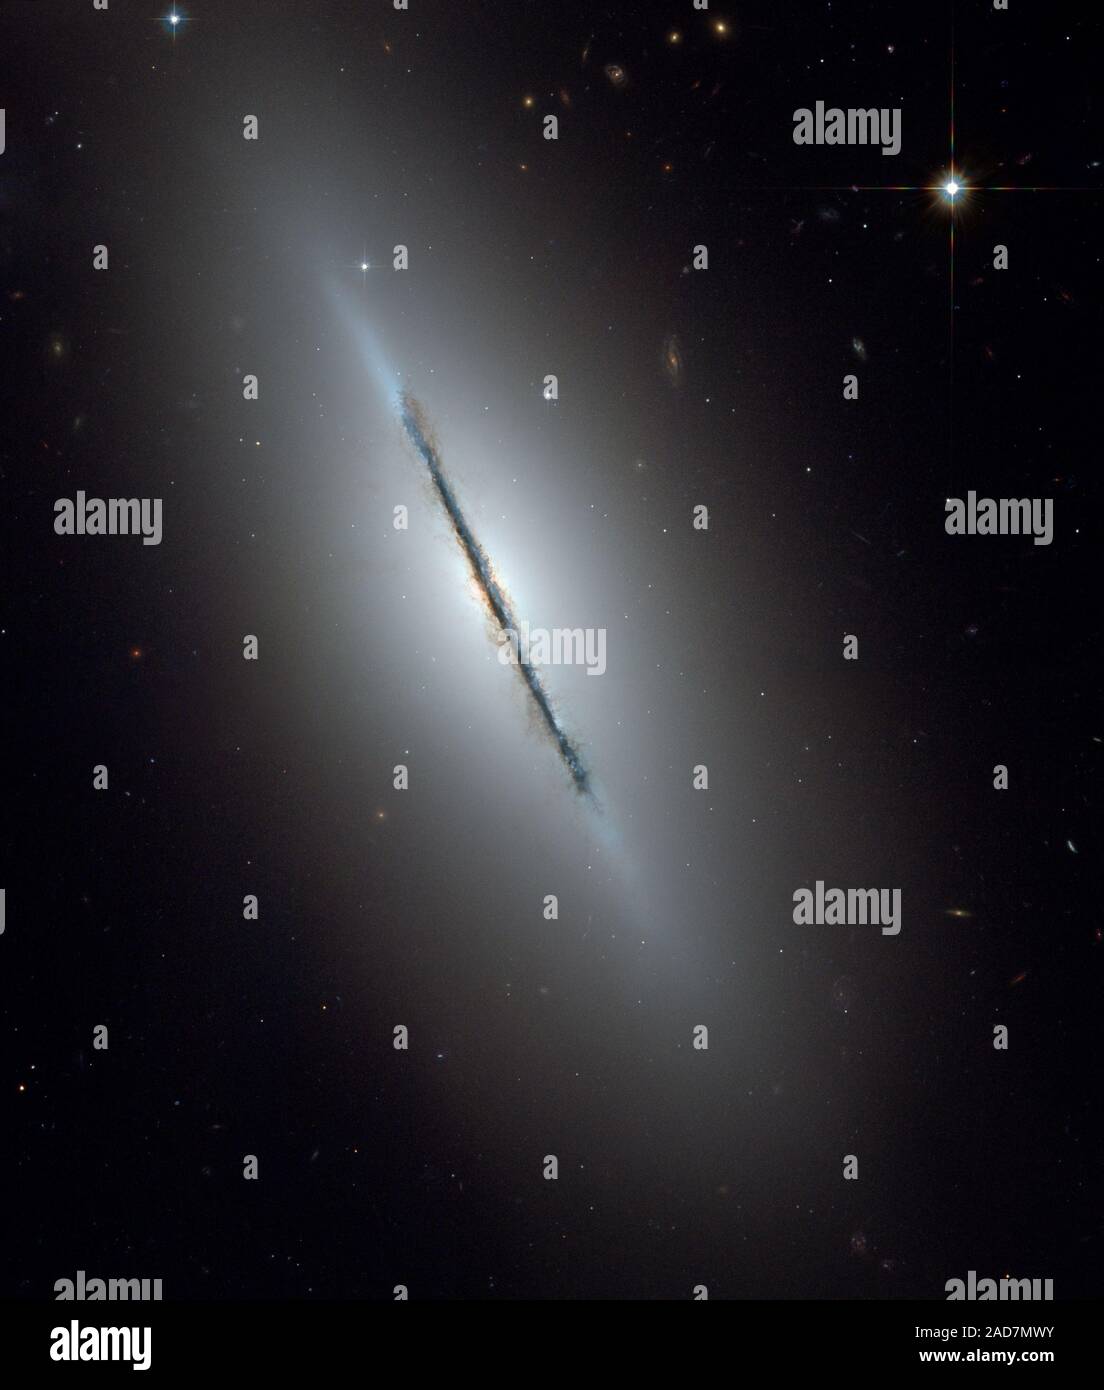 C'est un télescope spatial Hubble NASA unique en vue de la galaxie NGC 5866 disque incliné presque par la tranche à notre ligne de vue. Forte de Hubble révèle une vision crisp bande de poussière divisant la galaxie en deux moitiés. L'image met en évidence la structure de la galaxie : un subtil, renflement rougeâtre entourant un noyau lumineux, un disque bleu d'étoiles en parallèle à la bande de poussière, et la transparence de l'auréole. Certains malaises, sentiers filandreux de poussière peut être vu de la sinueuse et d'un disque de la galaxie dans le renflement intérieur et halo de la galaxie. L'auréole est parsemée de nombreux gravitationnellement liés clus Banque D'Images